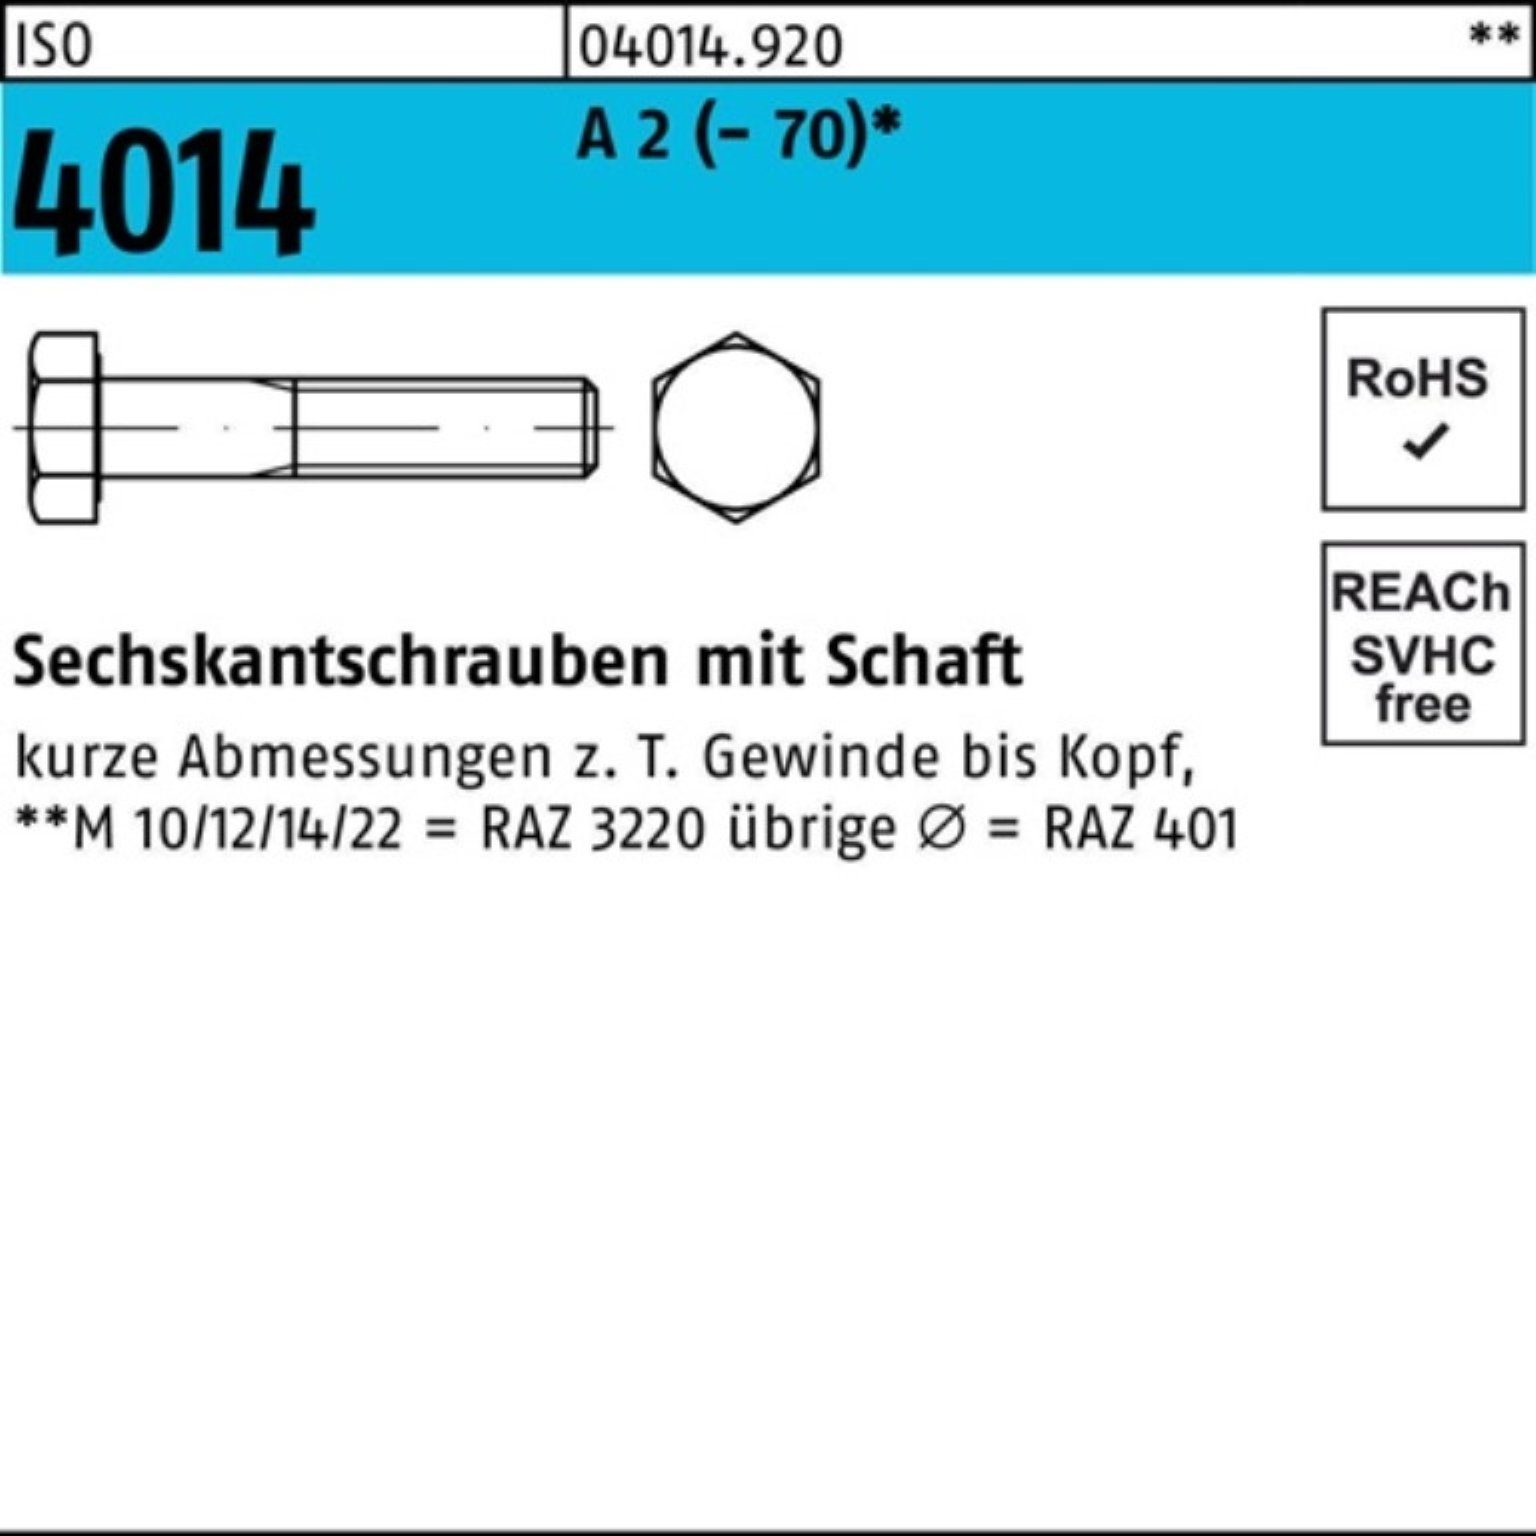 Bufab Sechskantschraube 100er Pack Sechskantschraube ISO 4014 Schaft M16x 220 A 2 (70) 1 St